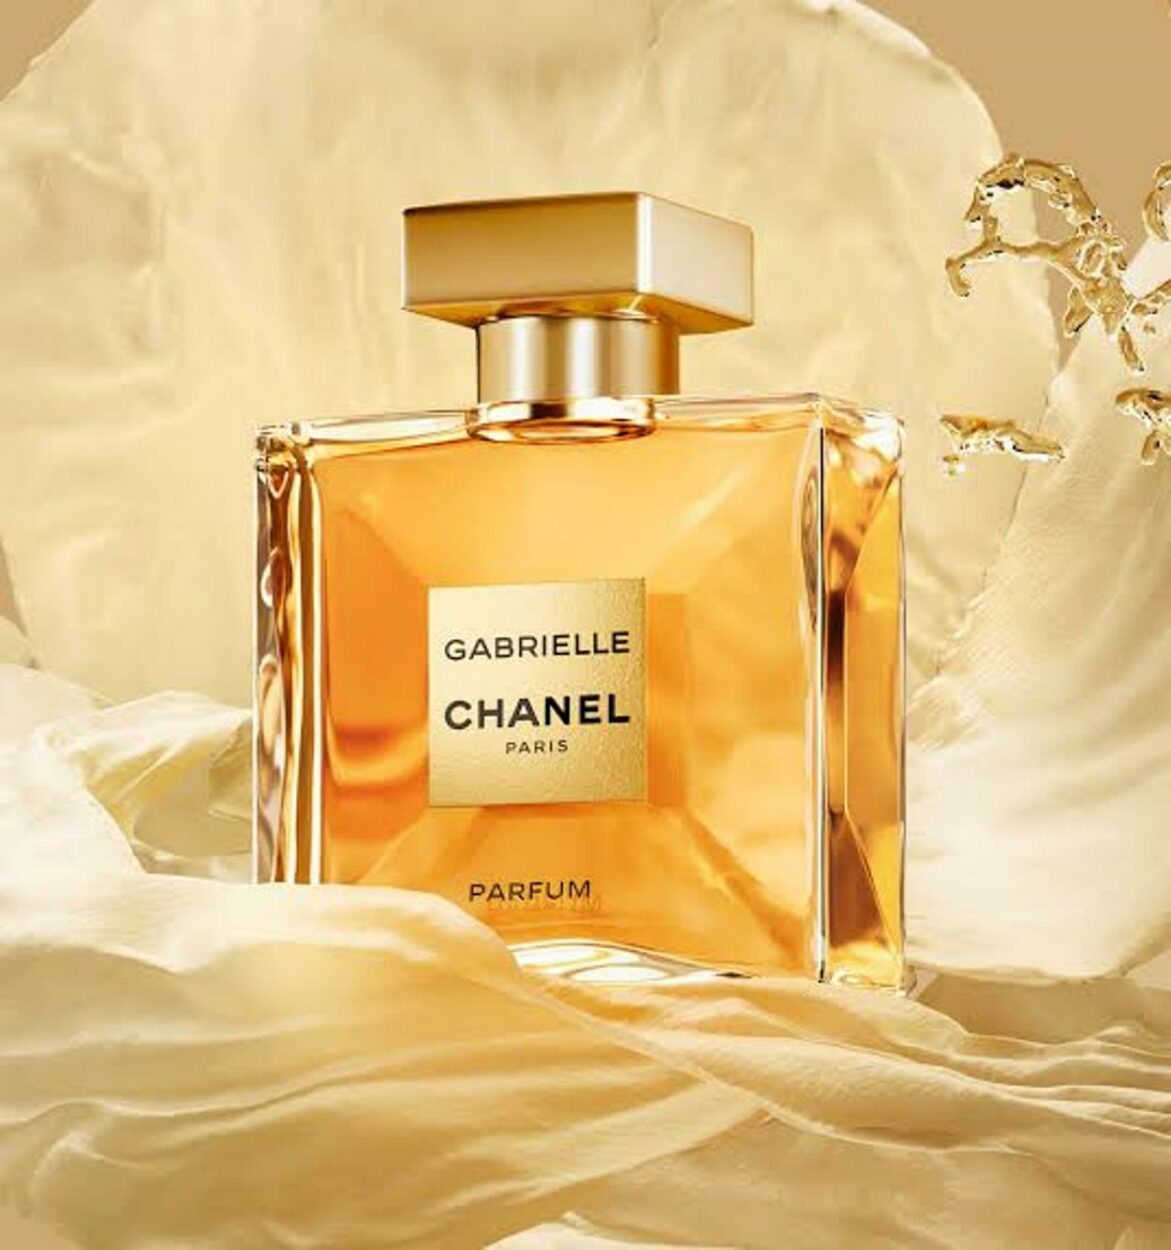 Chanel perfume Gabrielle.